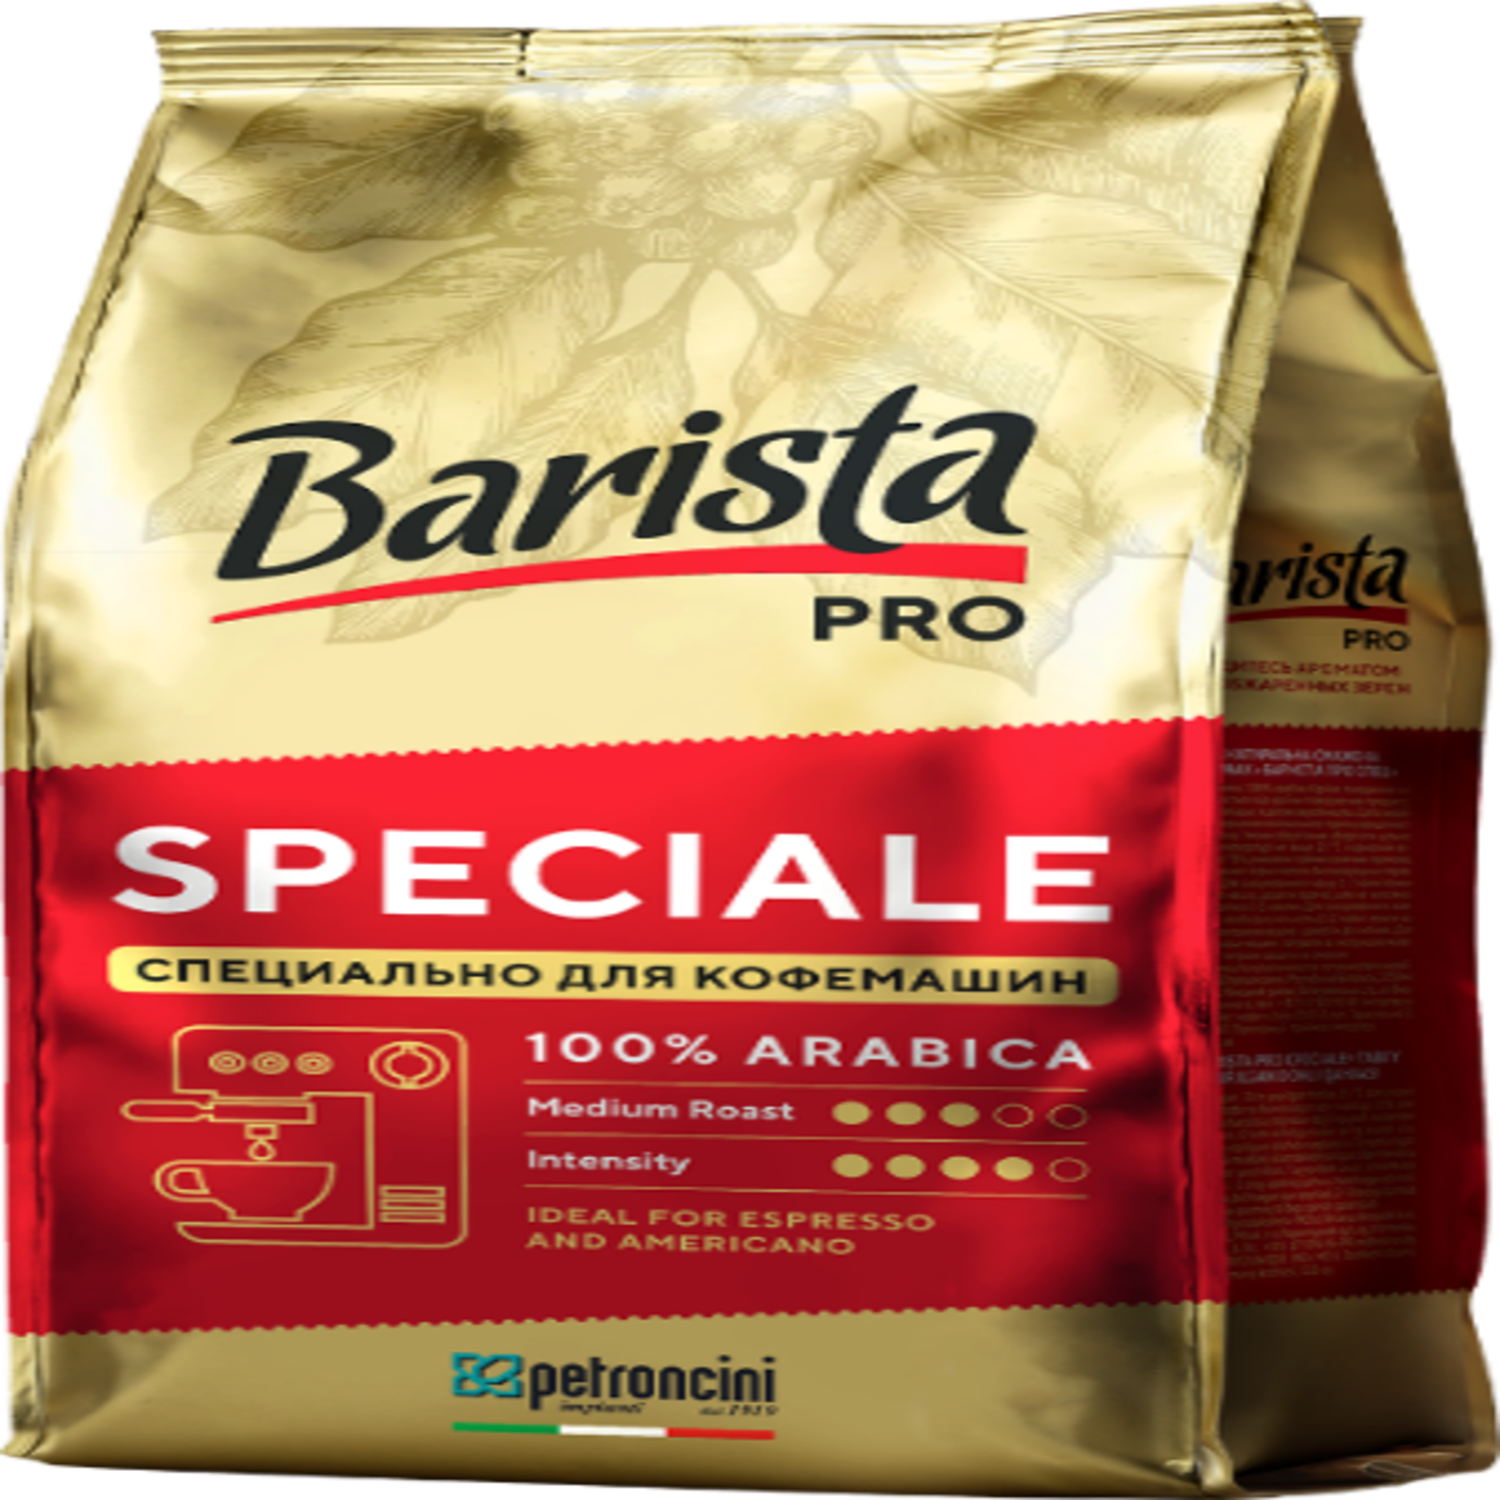 Кофе в зёрнах Barista Pro натуральный жареный Barista pro Speciale 1кг - фото 1